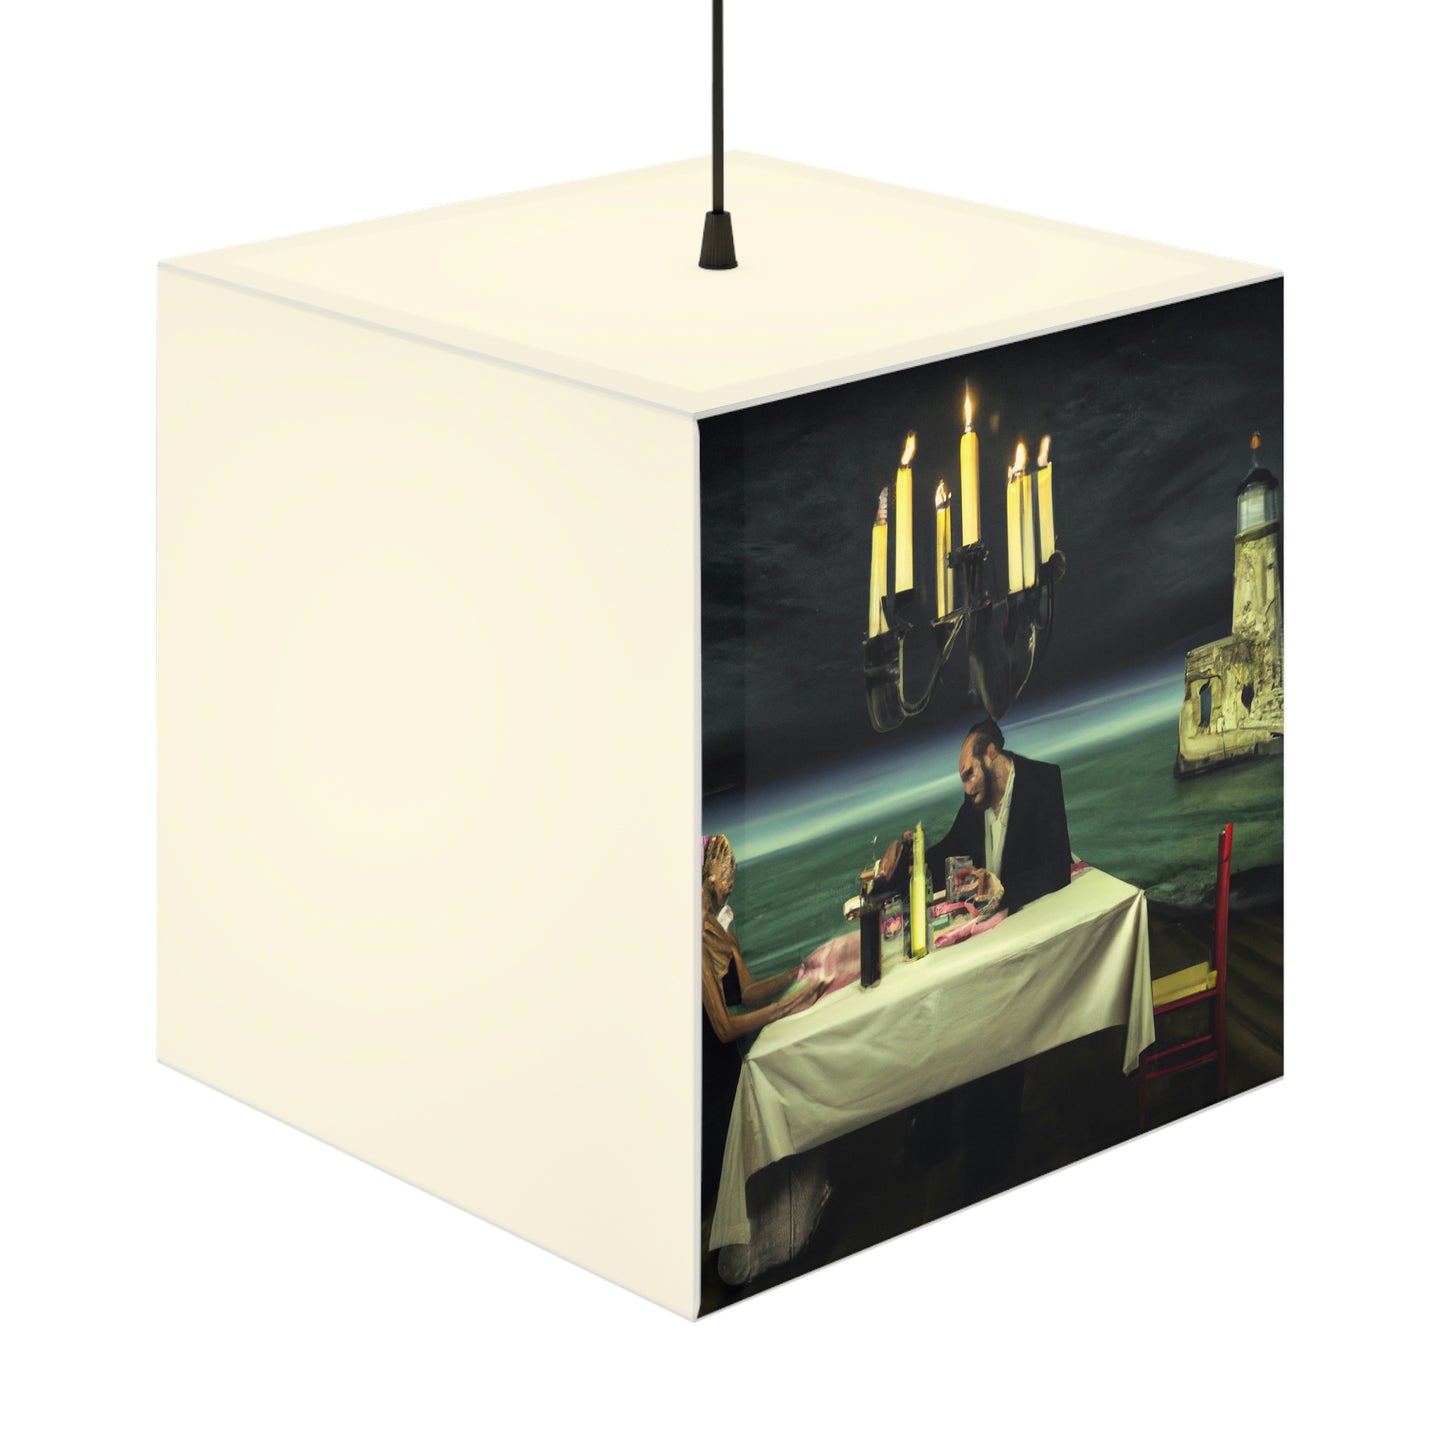 "Un faro de romance: una cena íntima a la luz de las velas en un faro olvidado" - La lámpara Alien Light Cube